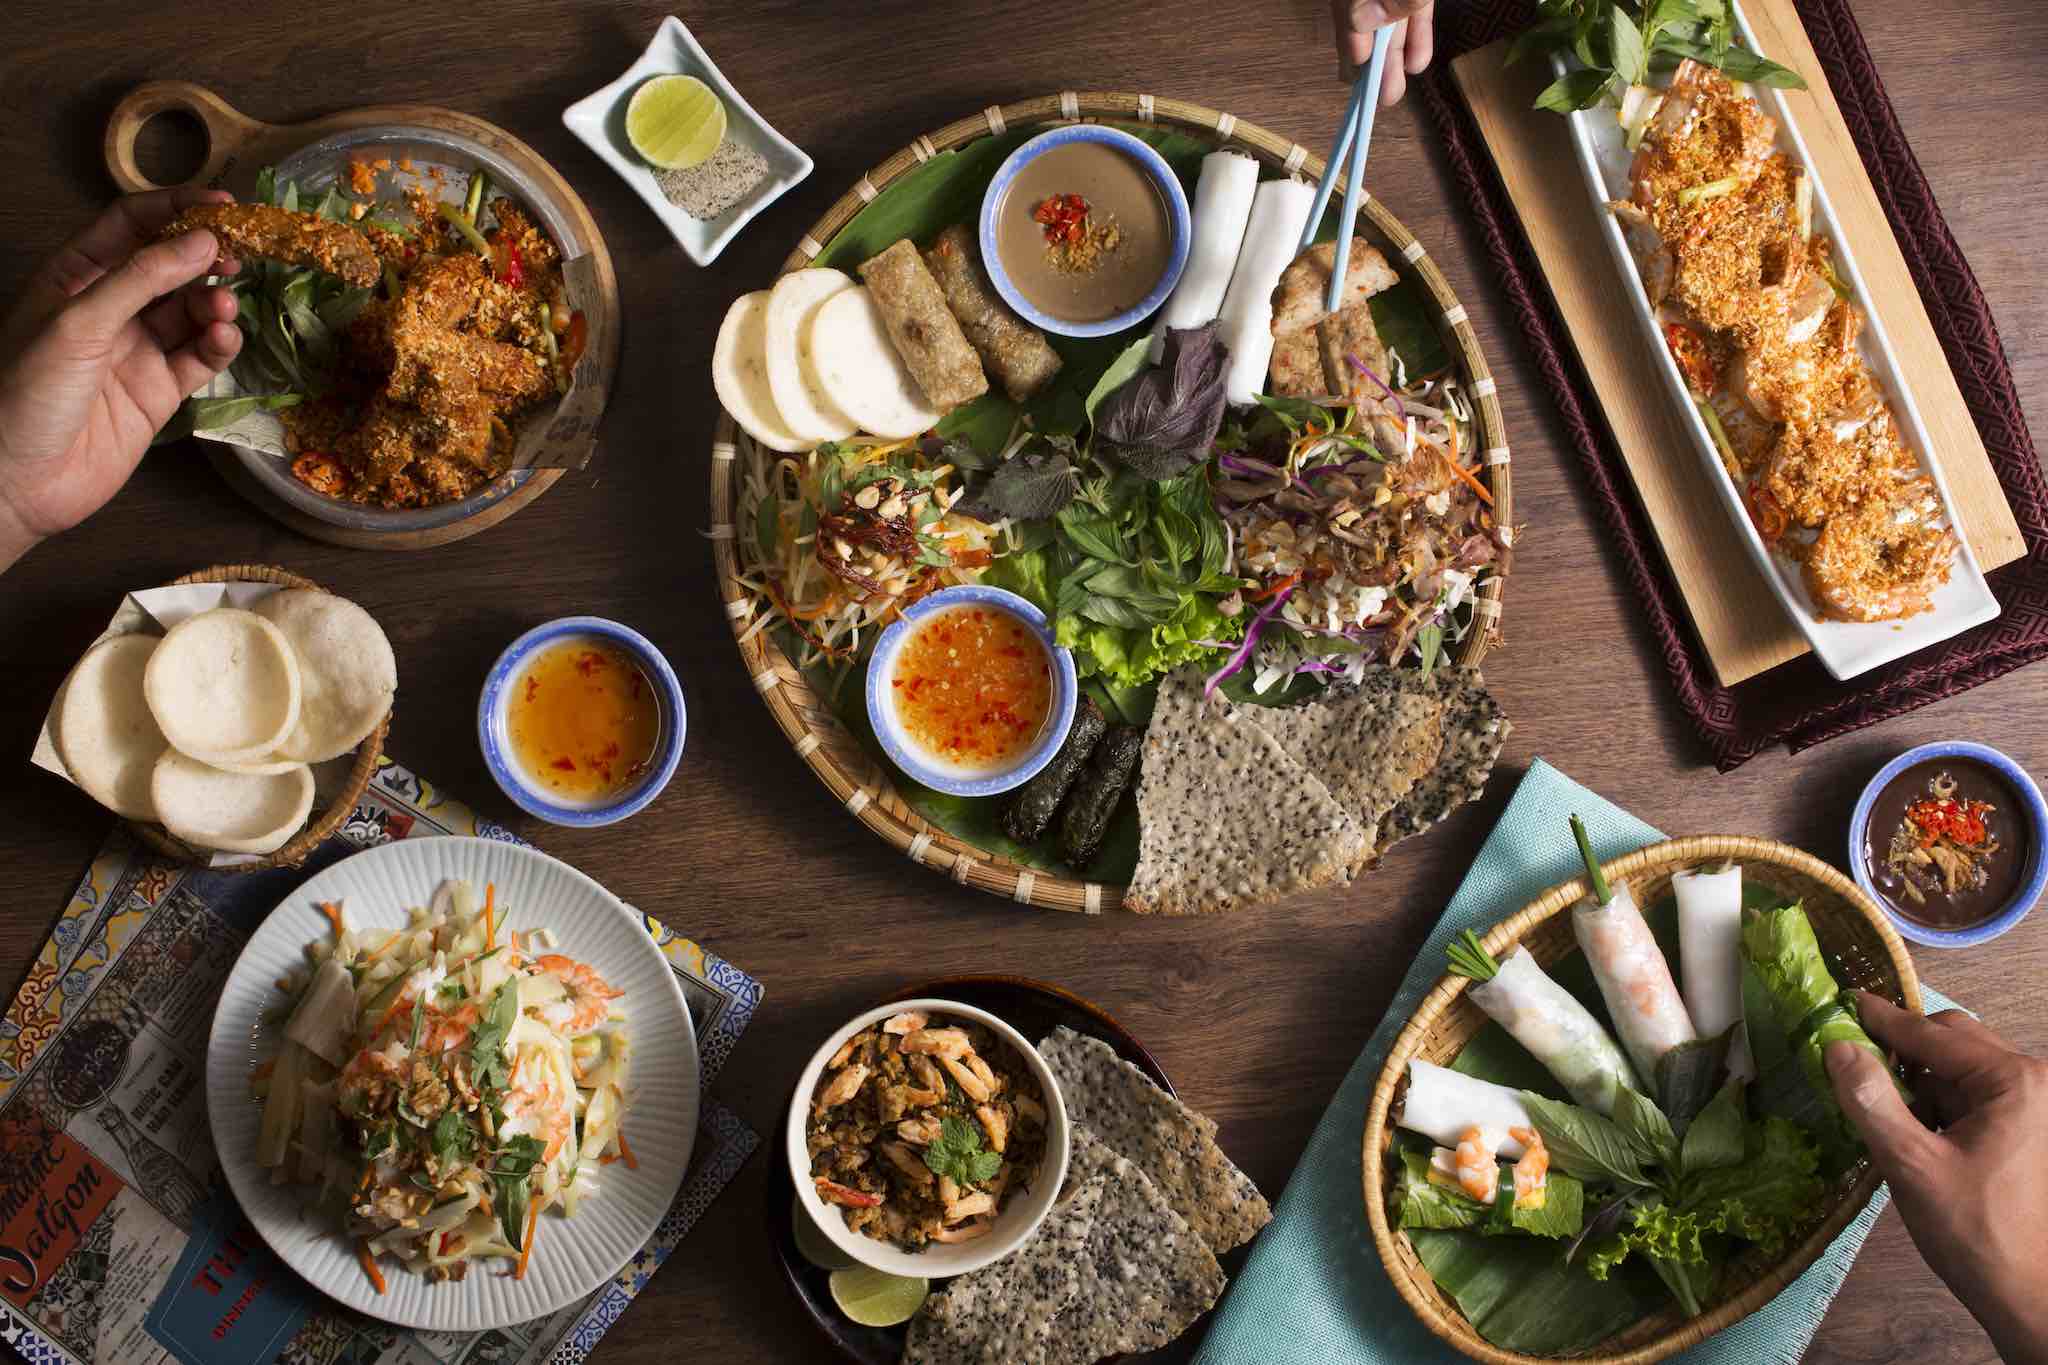 Những món ăn trưa ngon bổ rẻ ở Hà Nội hôm nay là gì?
